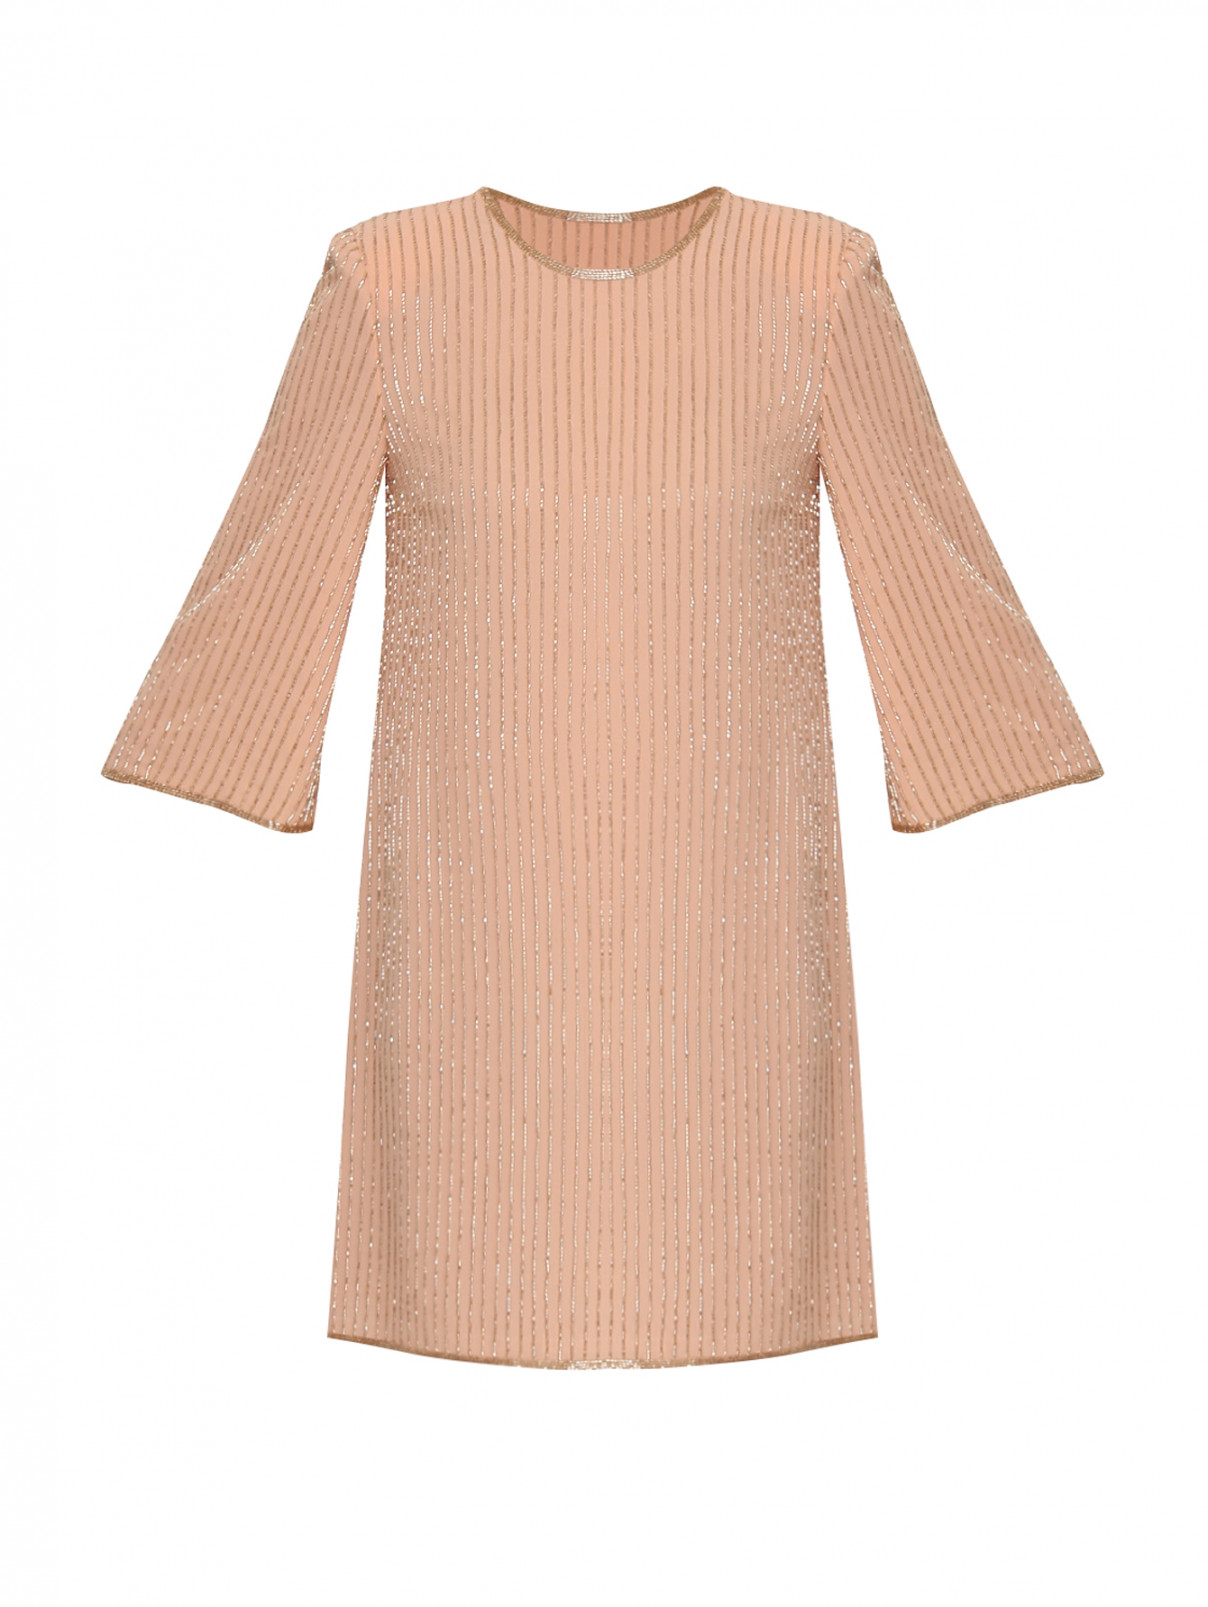 платье прямого кроя с вышивкой бисером Elisabetta Franchi  –  Общий вид  – Цвет:  Розовый